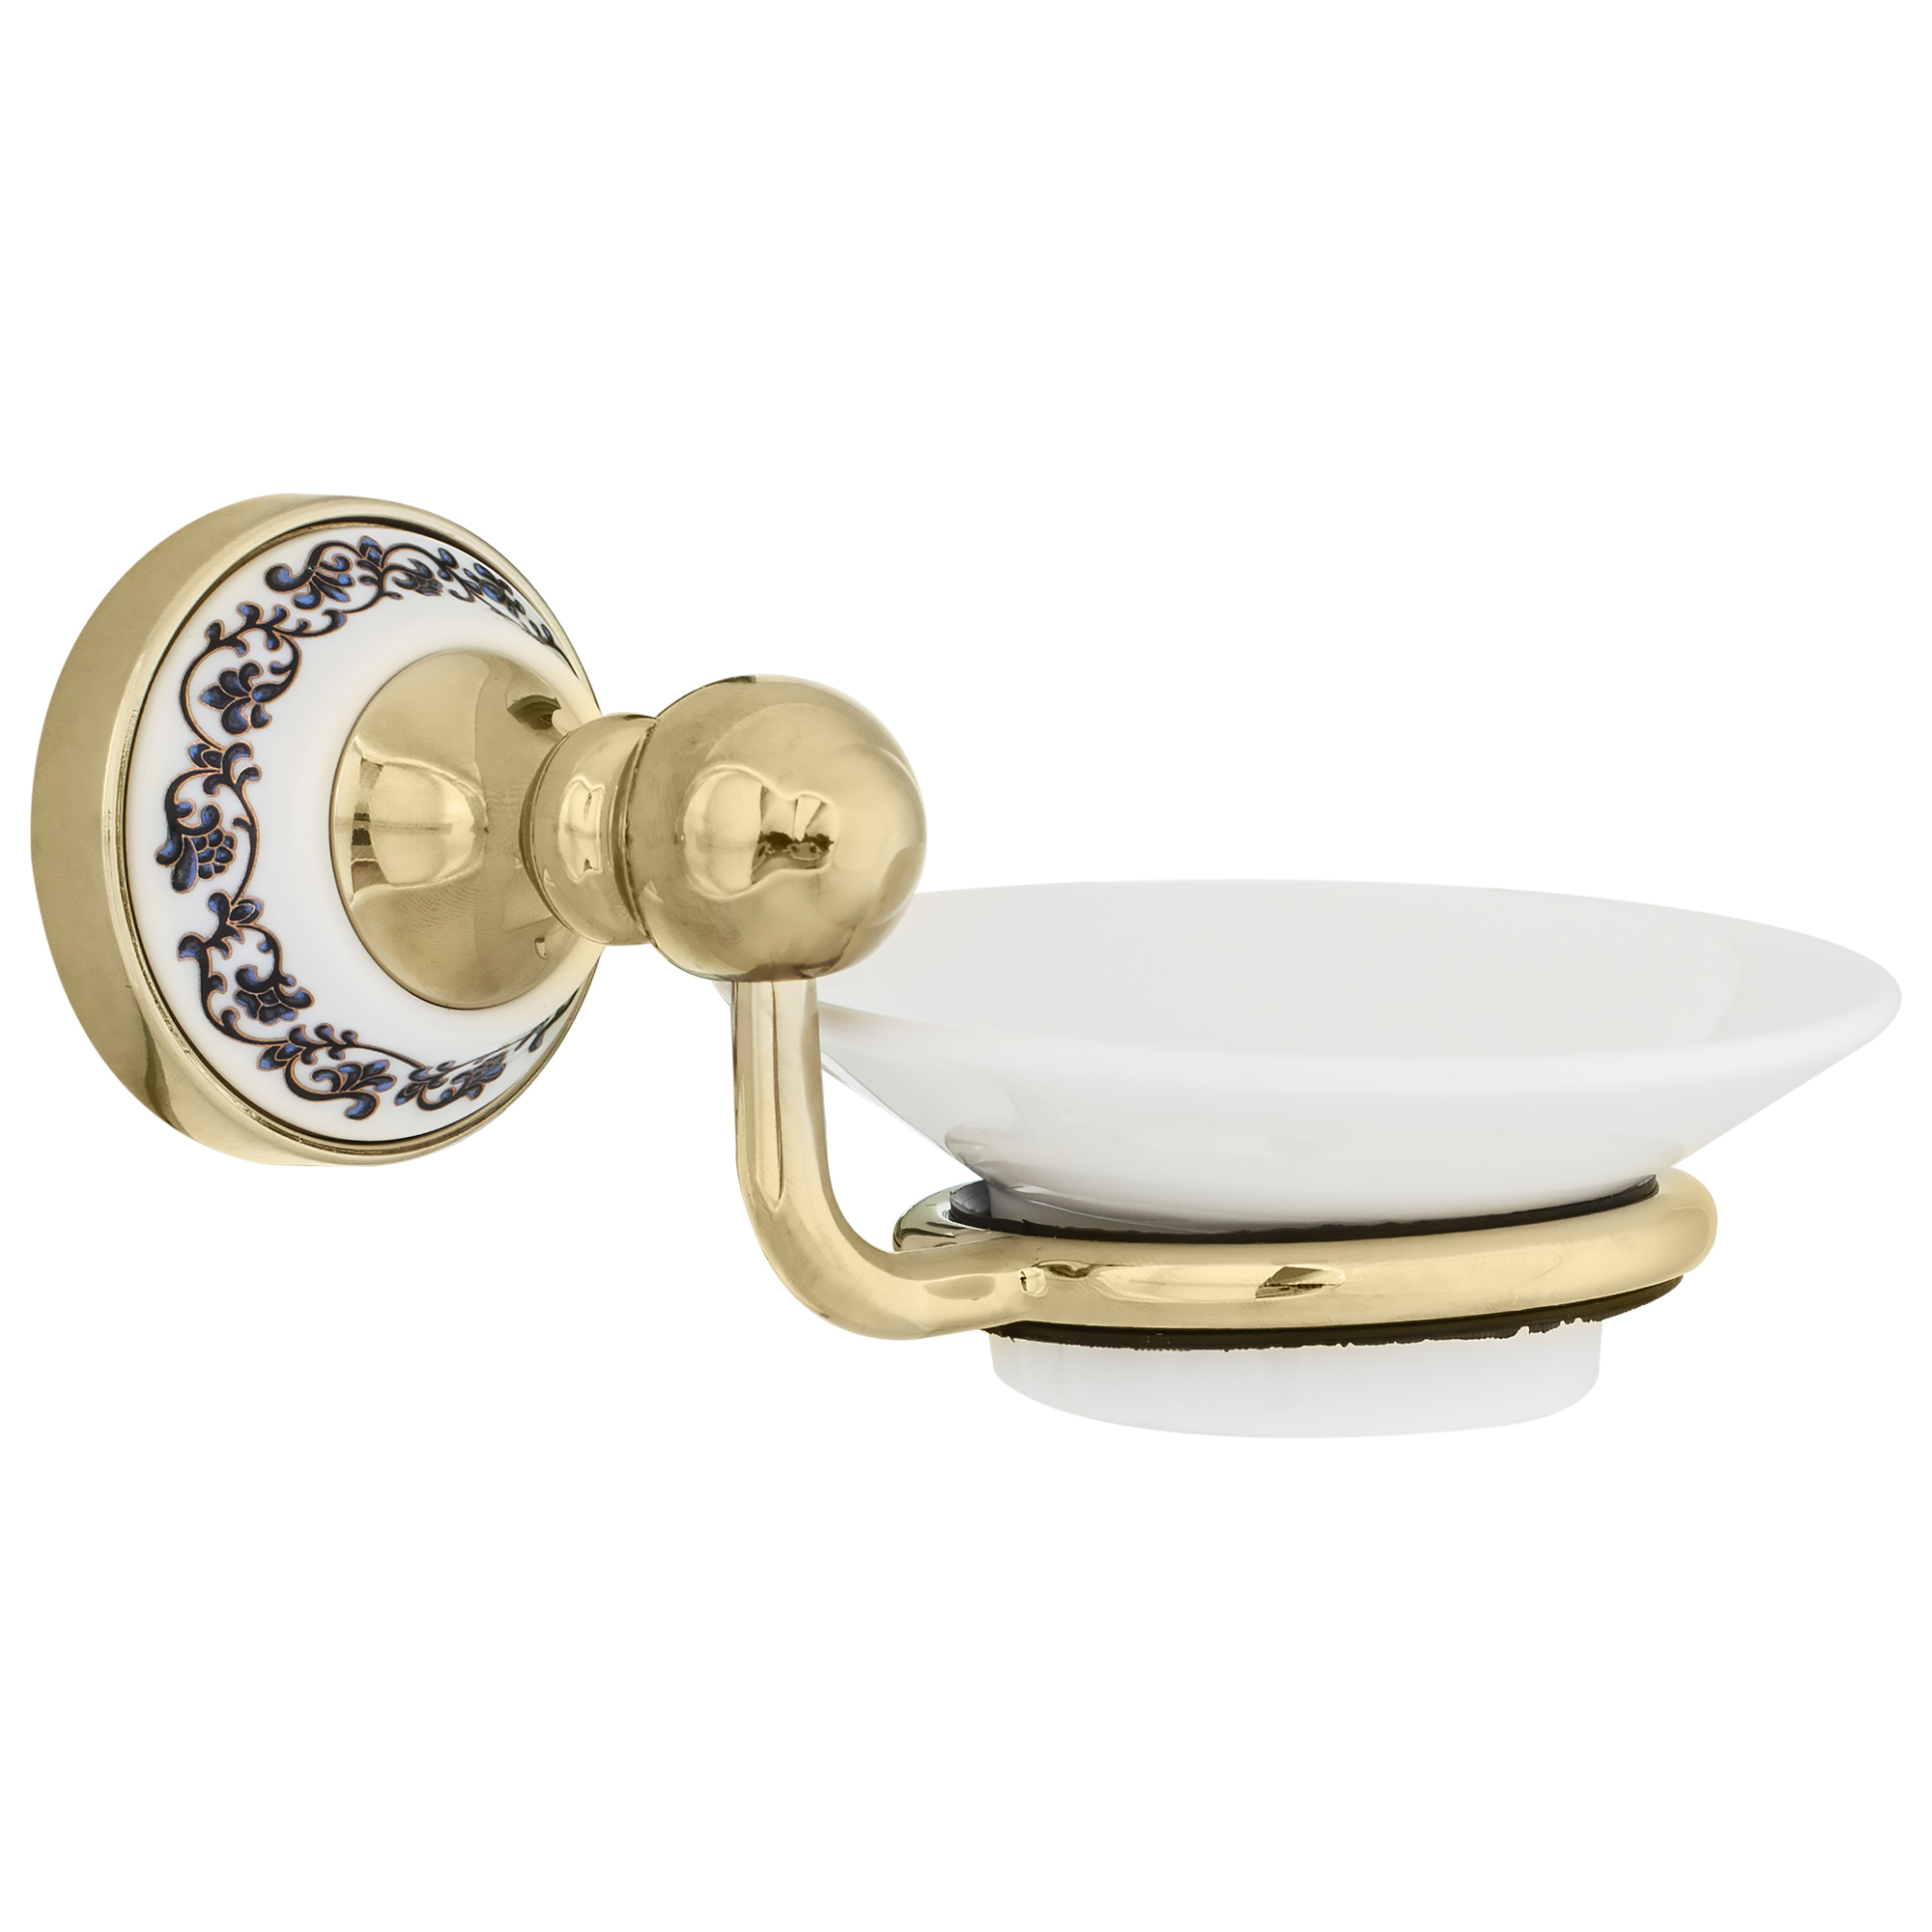 Чаща Генуя керамическая “Gold Tools” с бачком. Отзывы аксессуары для ванной Фиксен отель Чехия.